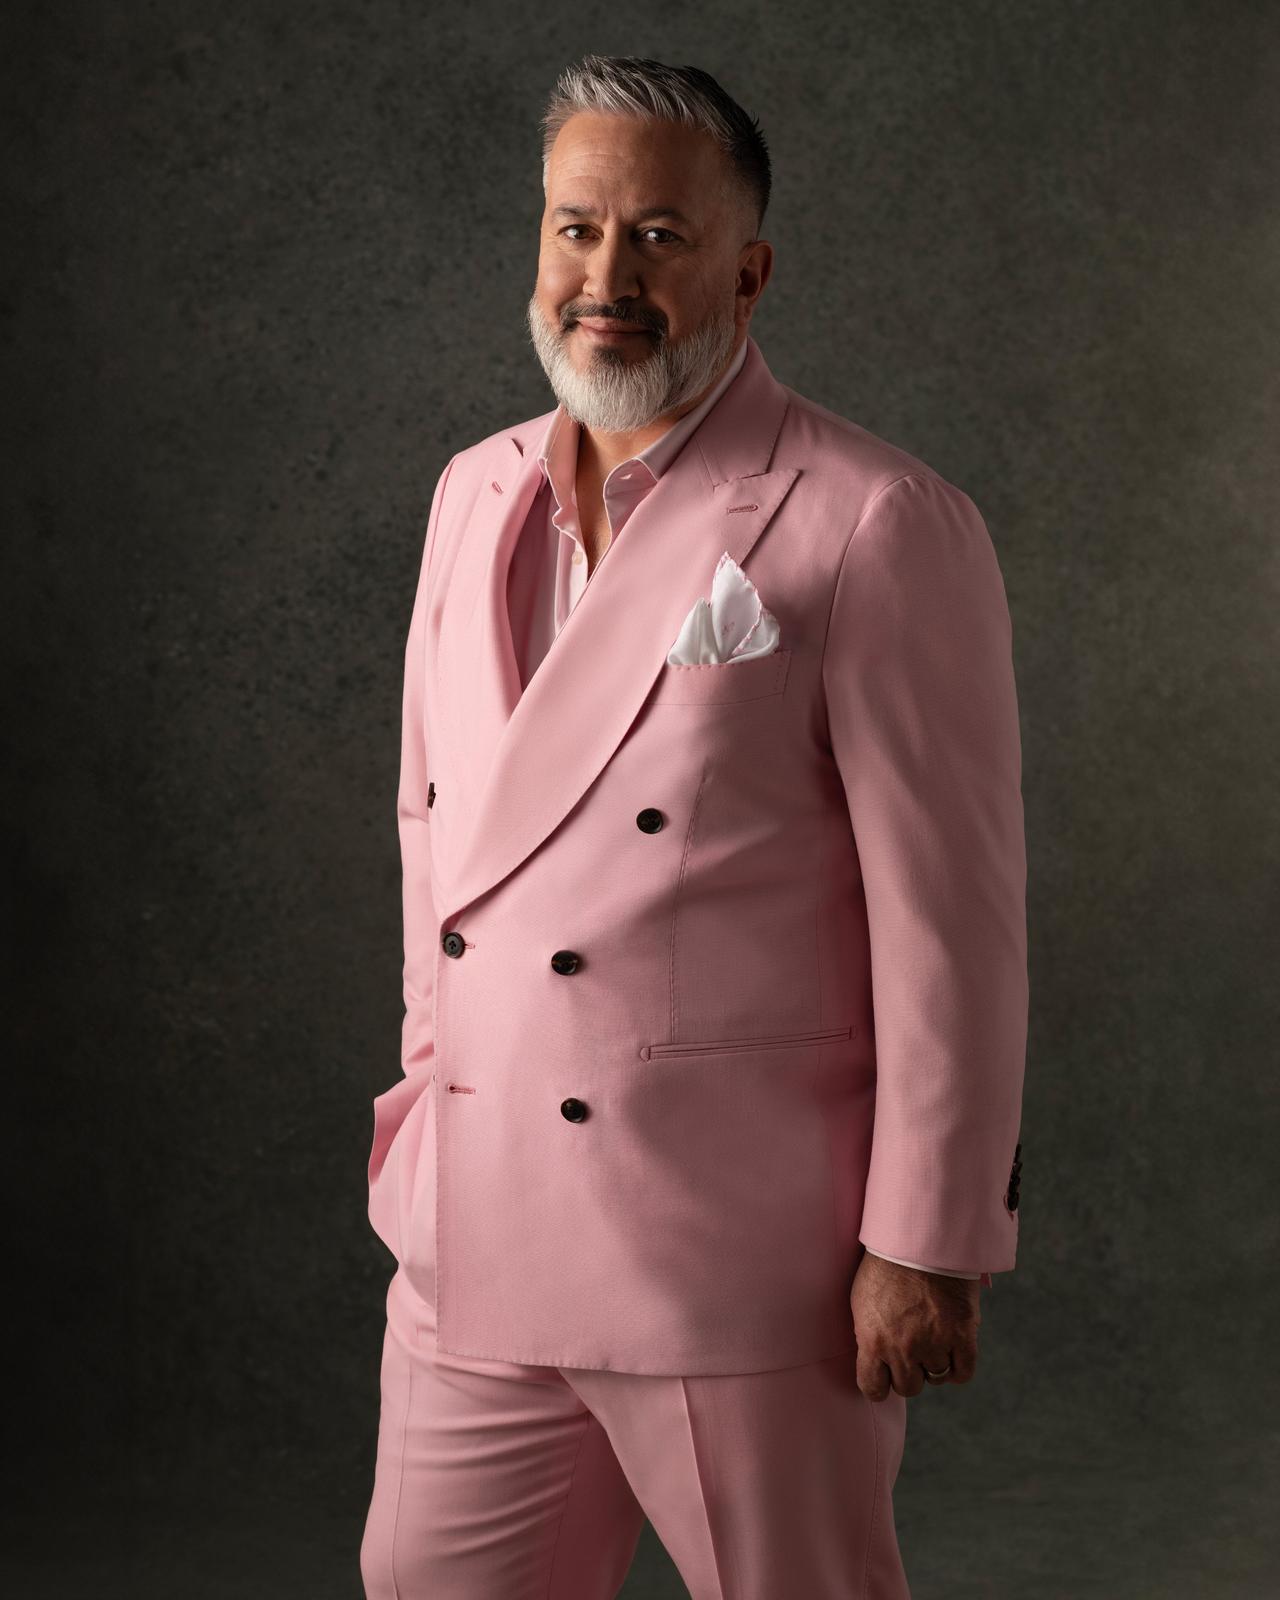 Un homme vêtu d'un costume rose